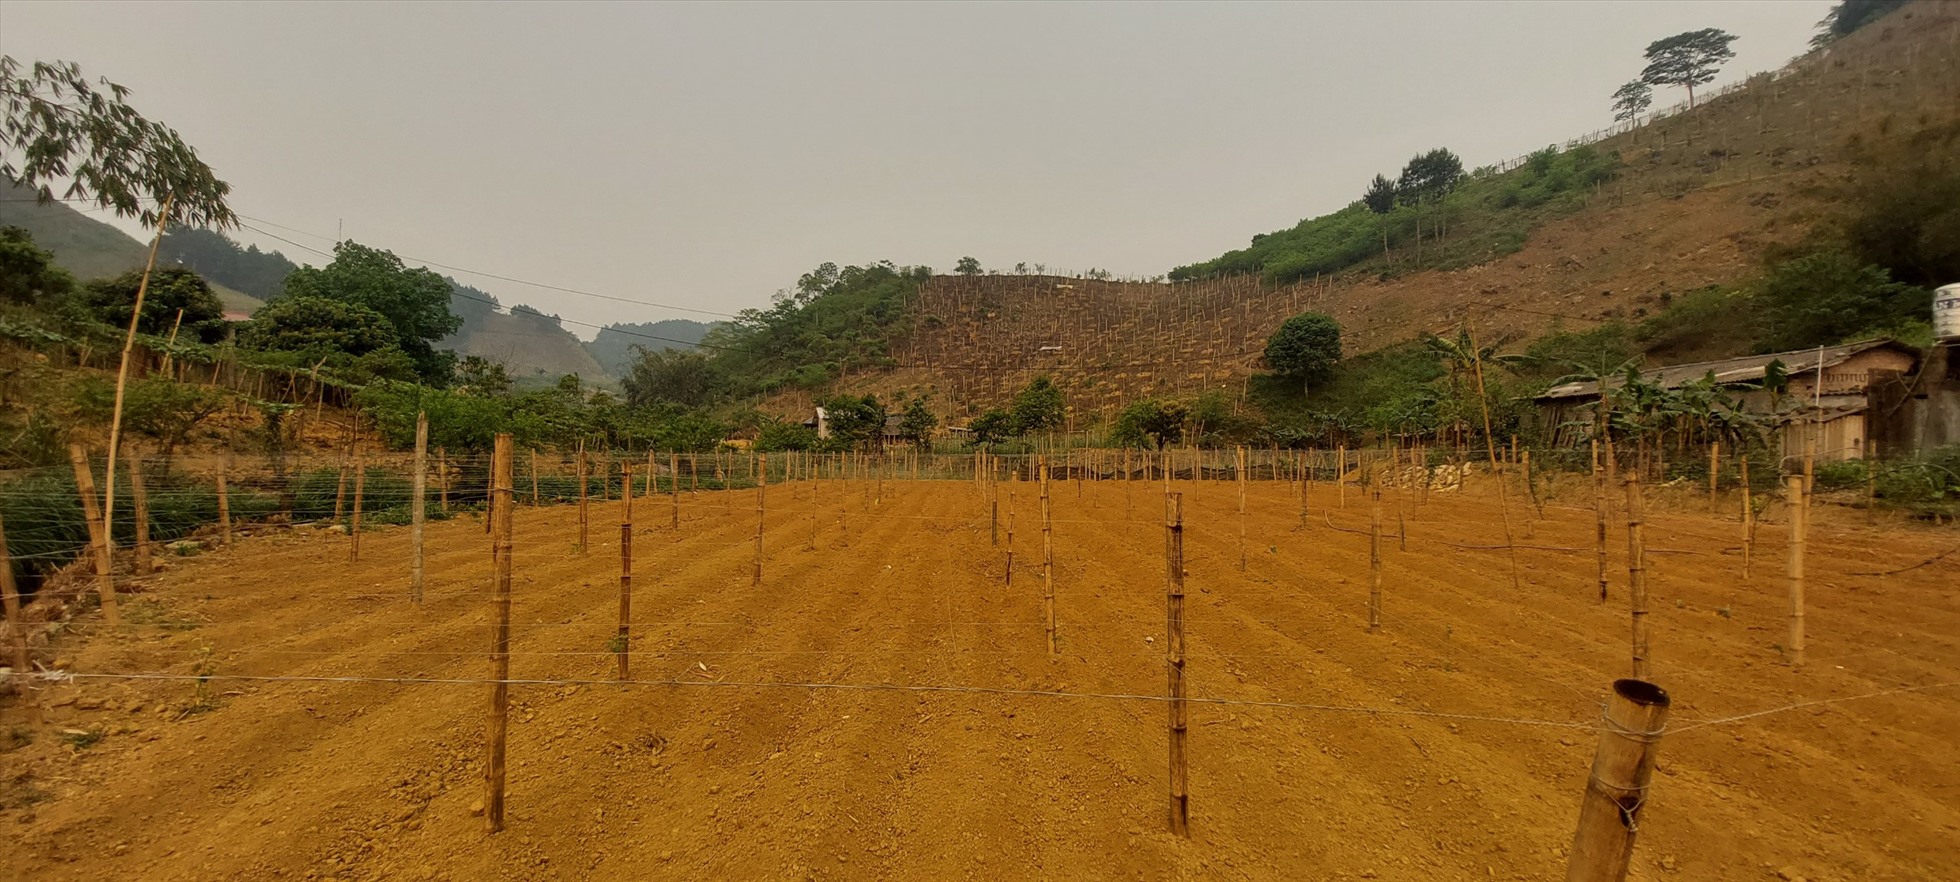 Nhiều diện tích đất nông nghiệp của huyện Vân Hồ vẫn chưa thể xuống giống do thiếu nước tưới.